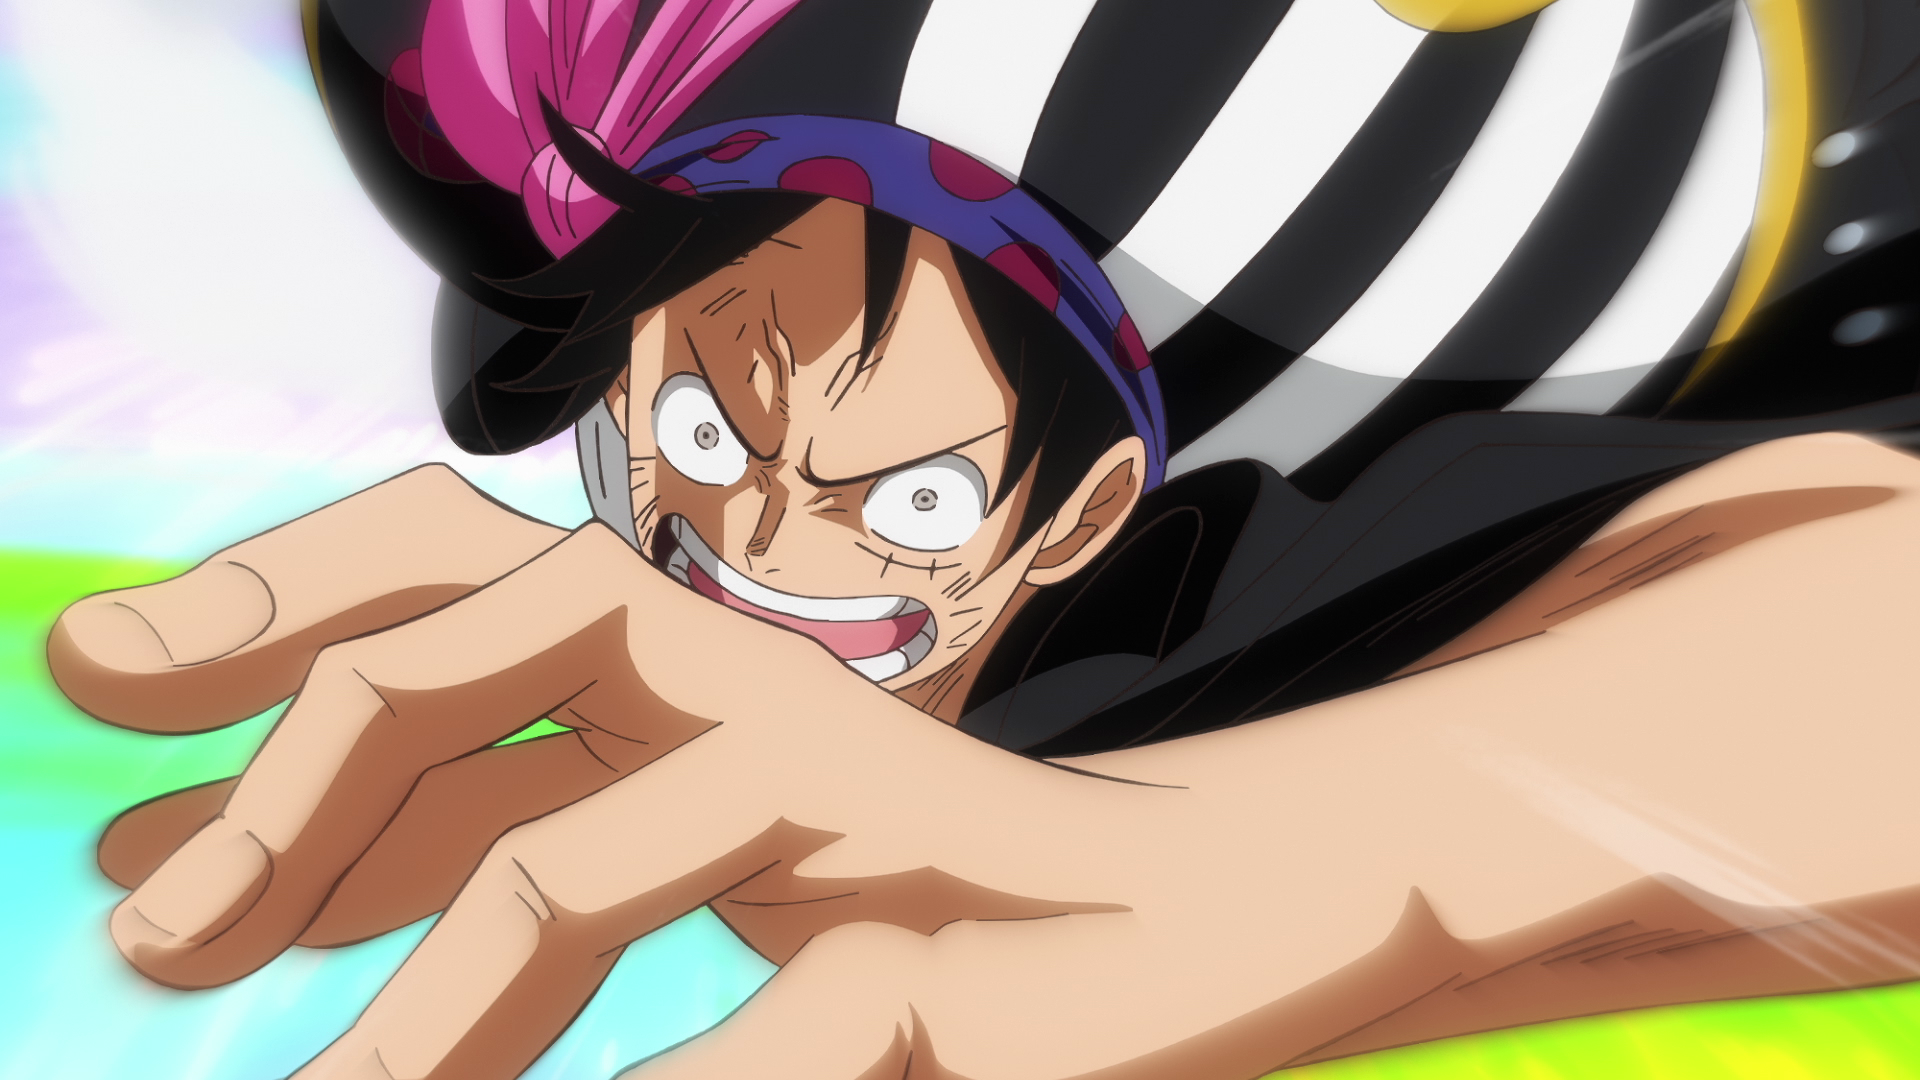 Phim One Piece đã trở thành một biểu tượng của thể loại anime trong suốt hơn 20 năm qua. Với những hình ảnh đẹp mắt và những câu chuyện kịch tính, đã có hàng triệu fan hâm mộ trên toàn thế giới. Hãy xem hình ảnh về phim One Piece để hiểu thêm về những nhân vật đầy cá tính và những cuộc phiêu lưu tuyệt vời của họ.